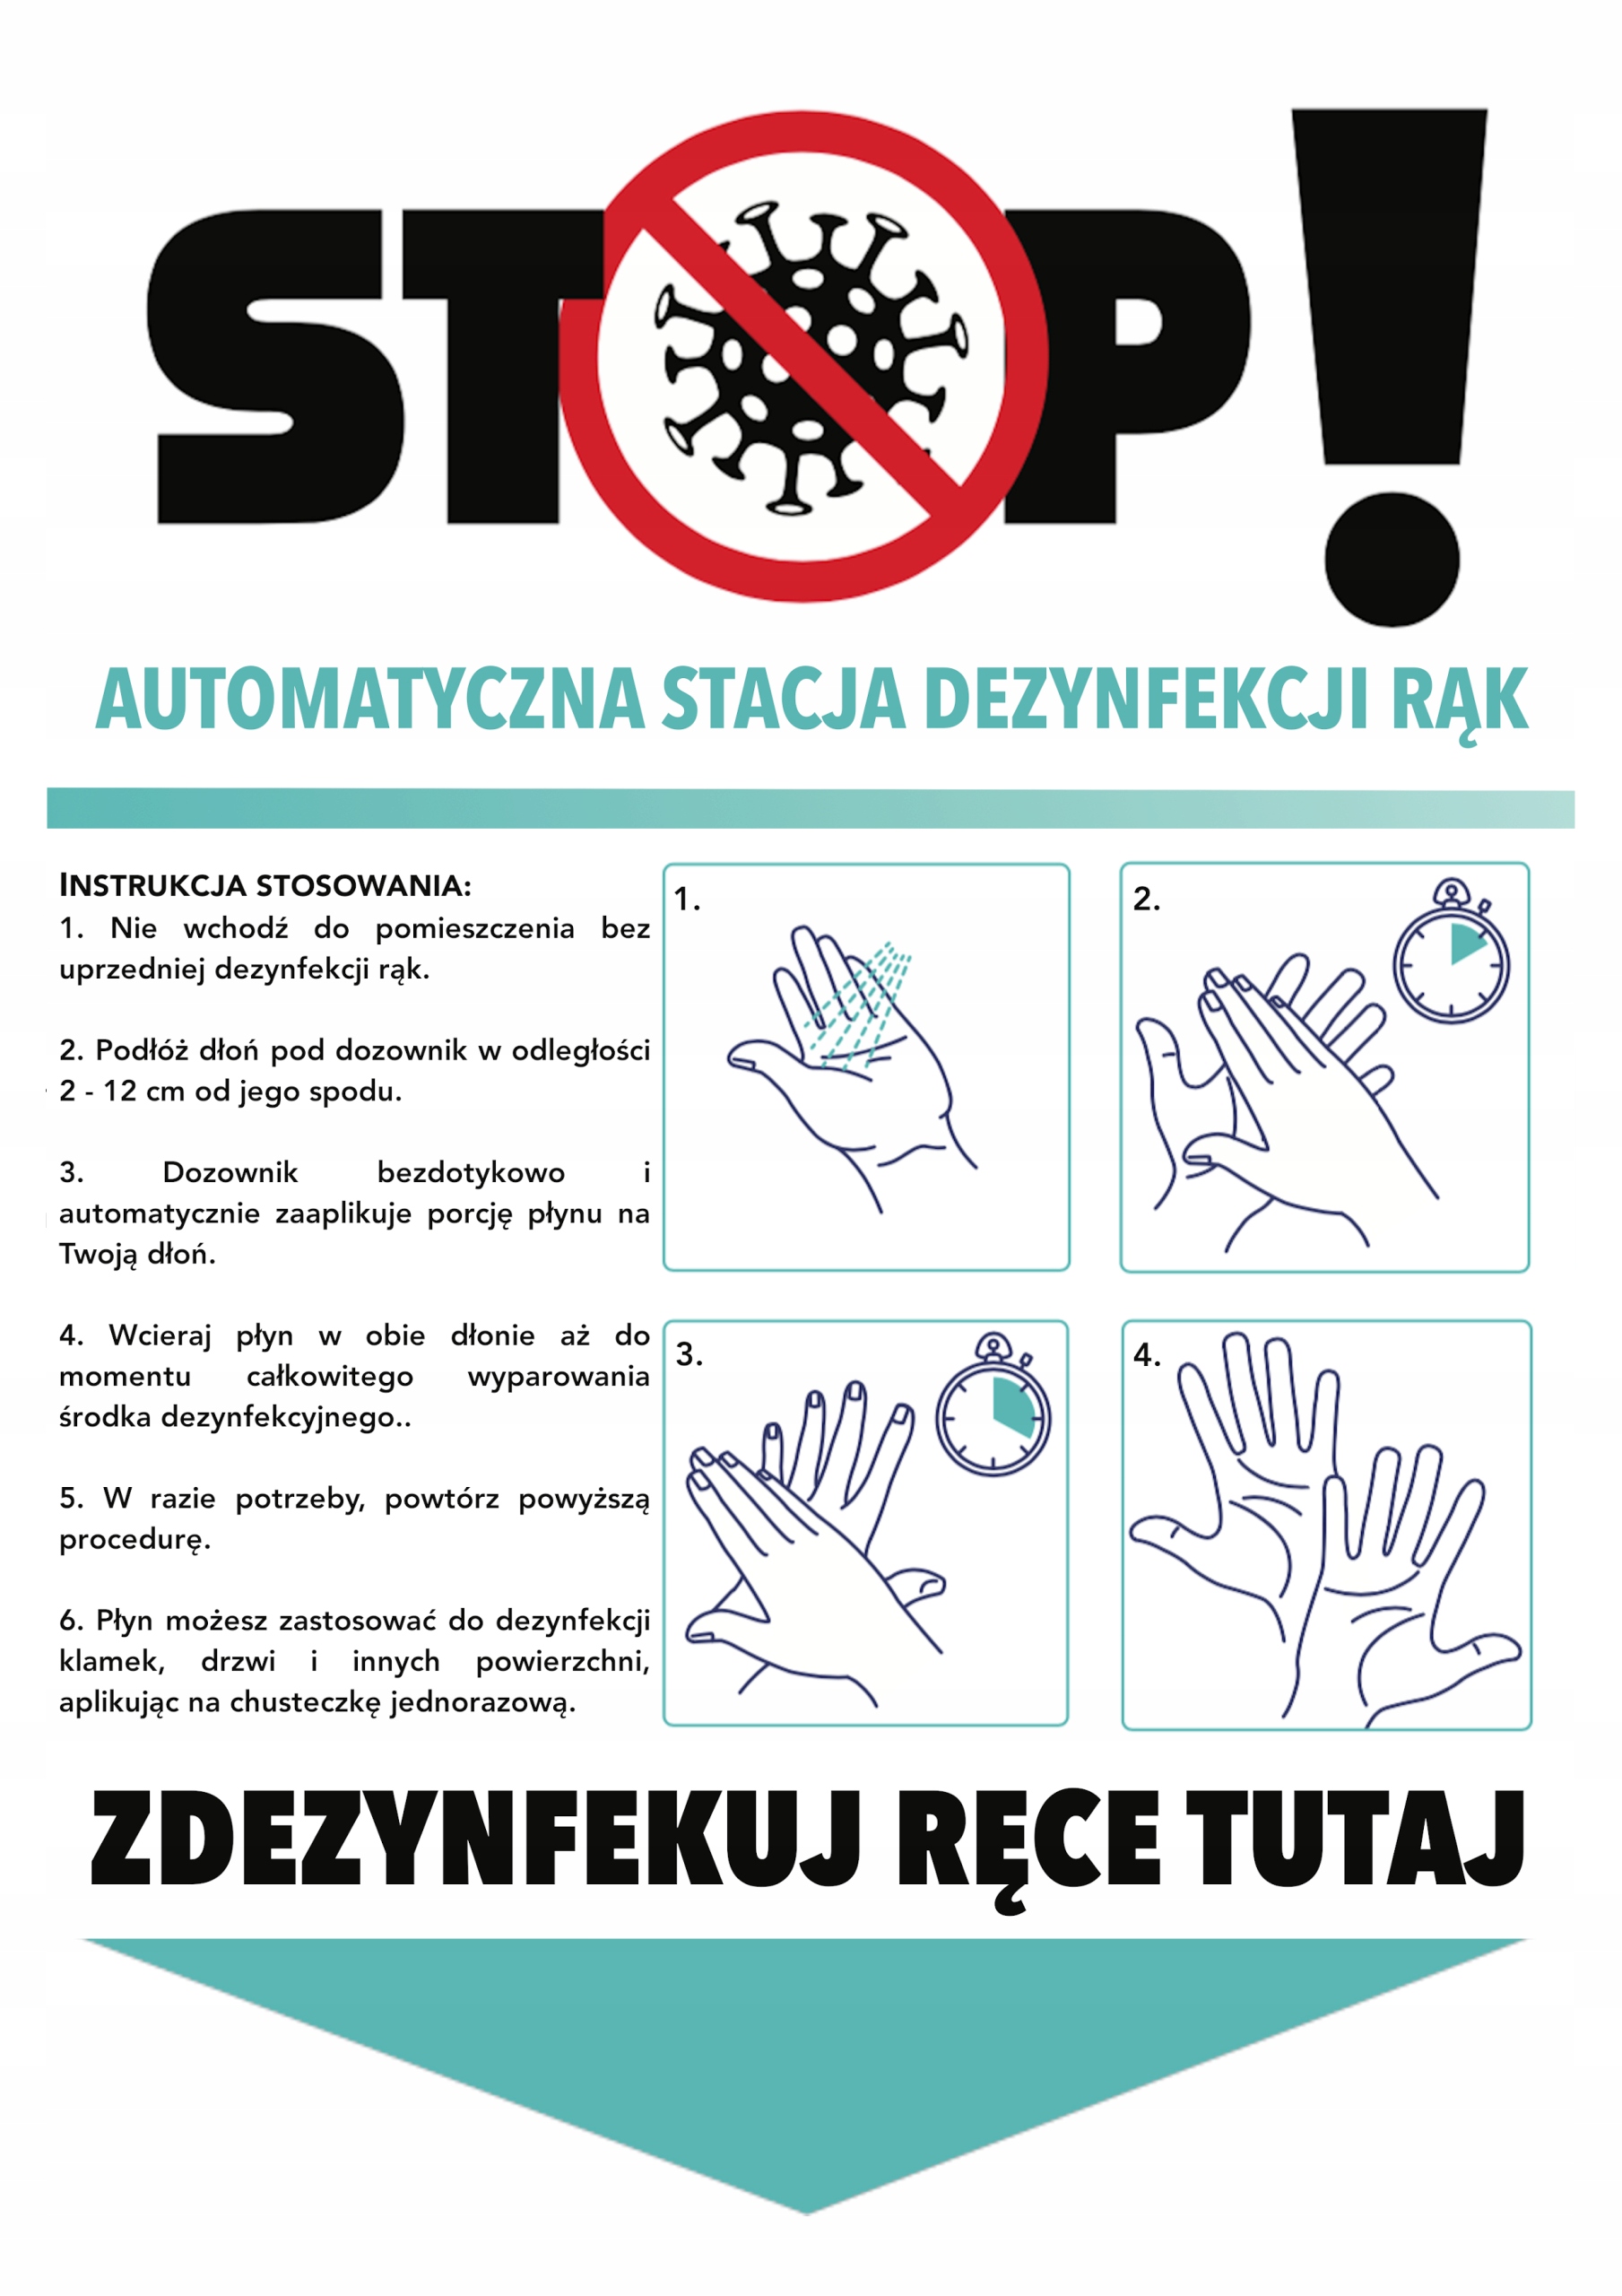 Automatyczna stacja do dezynfekcji rąk - instrukcja obsługi